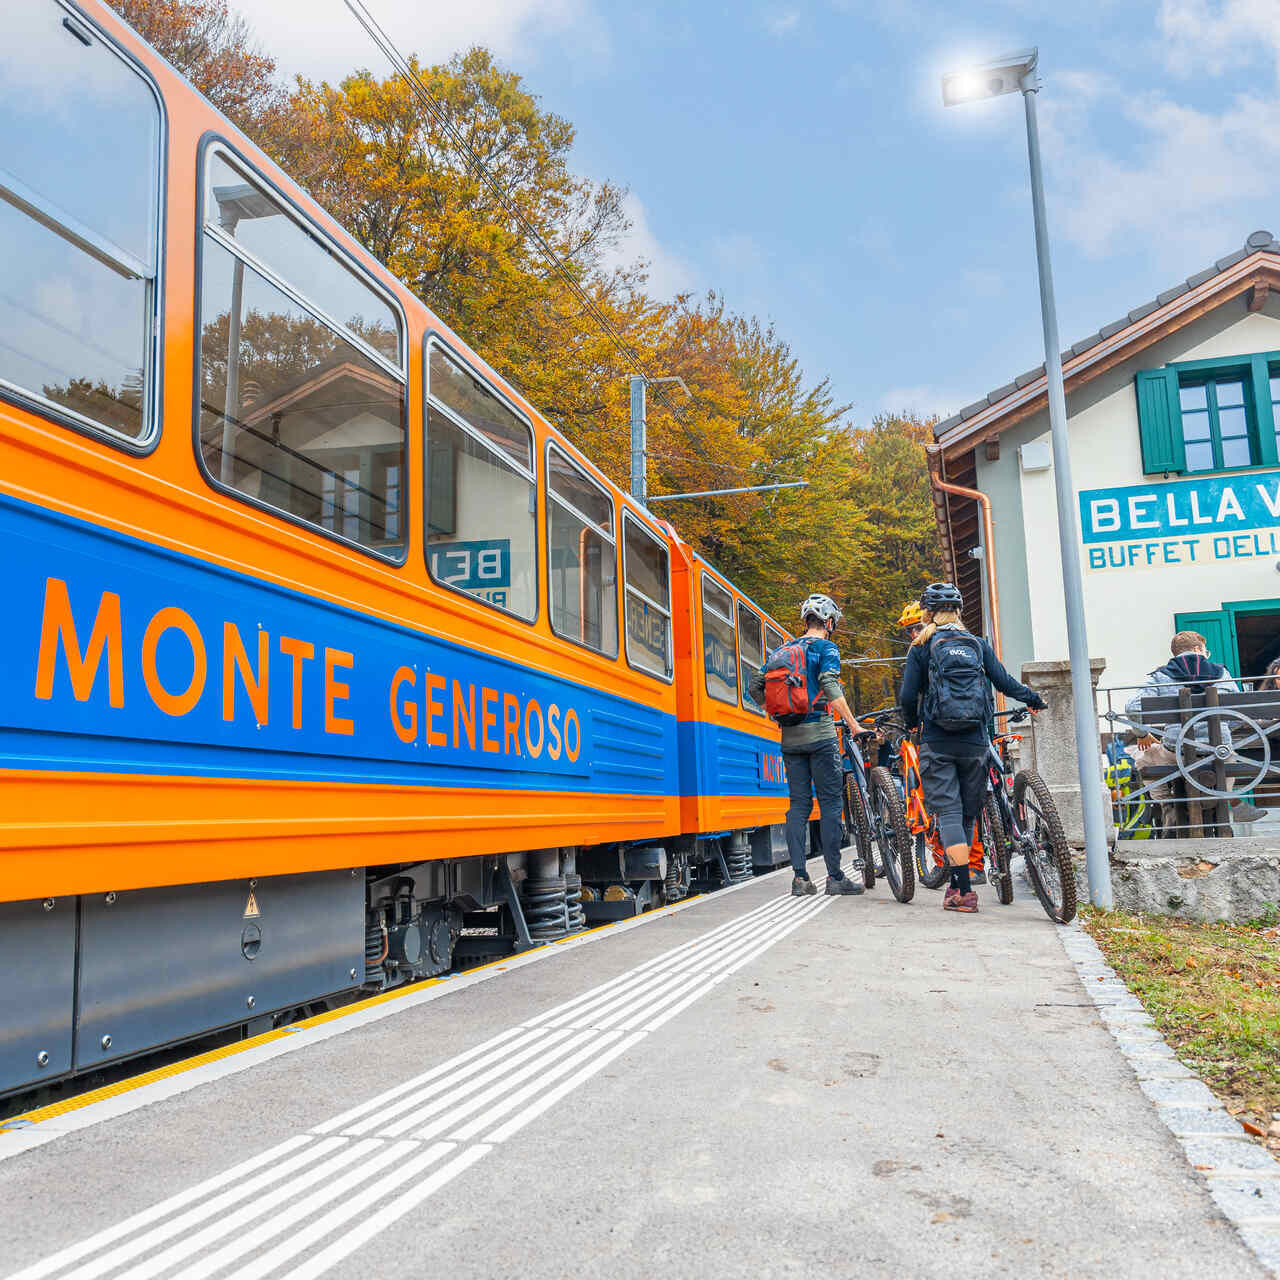 Monte Generoso: de klassieke blauw-oranje wagons van de spoorlijn